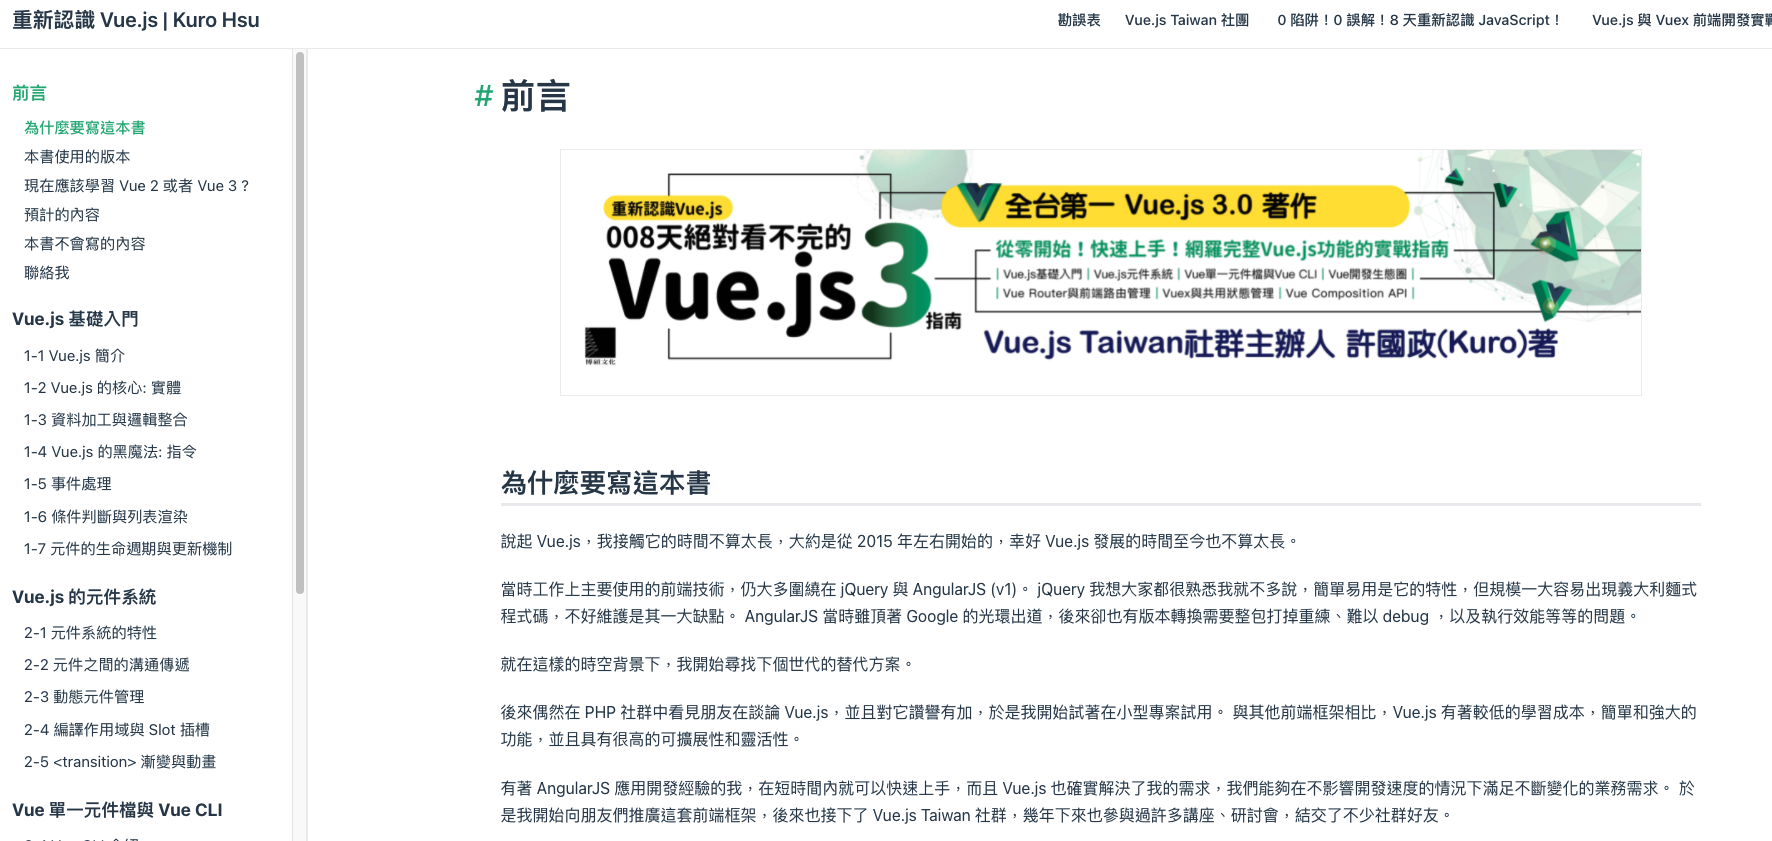 「重新認識 Vue.js」 by Kuro Hsu